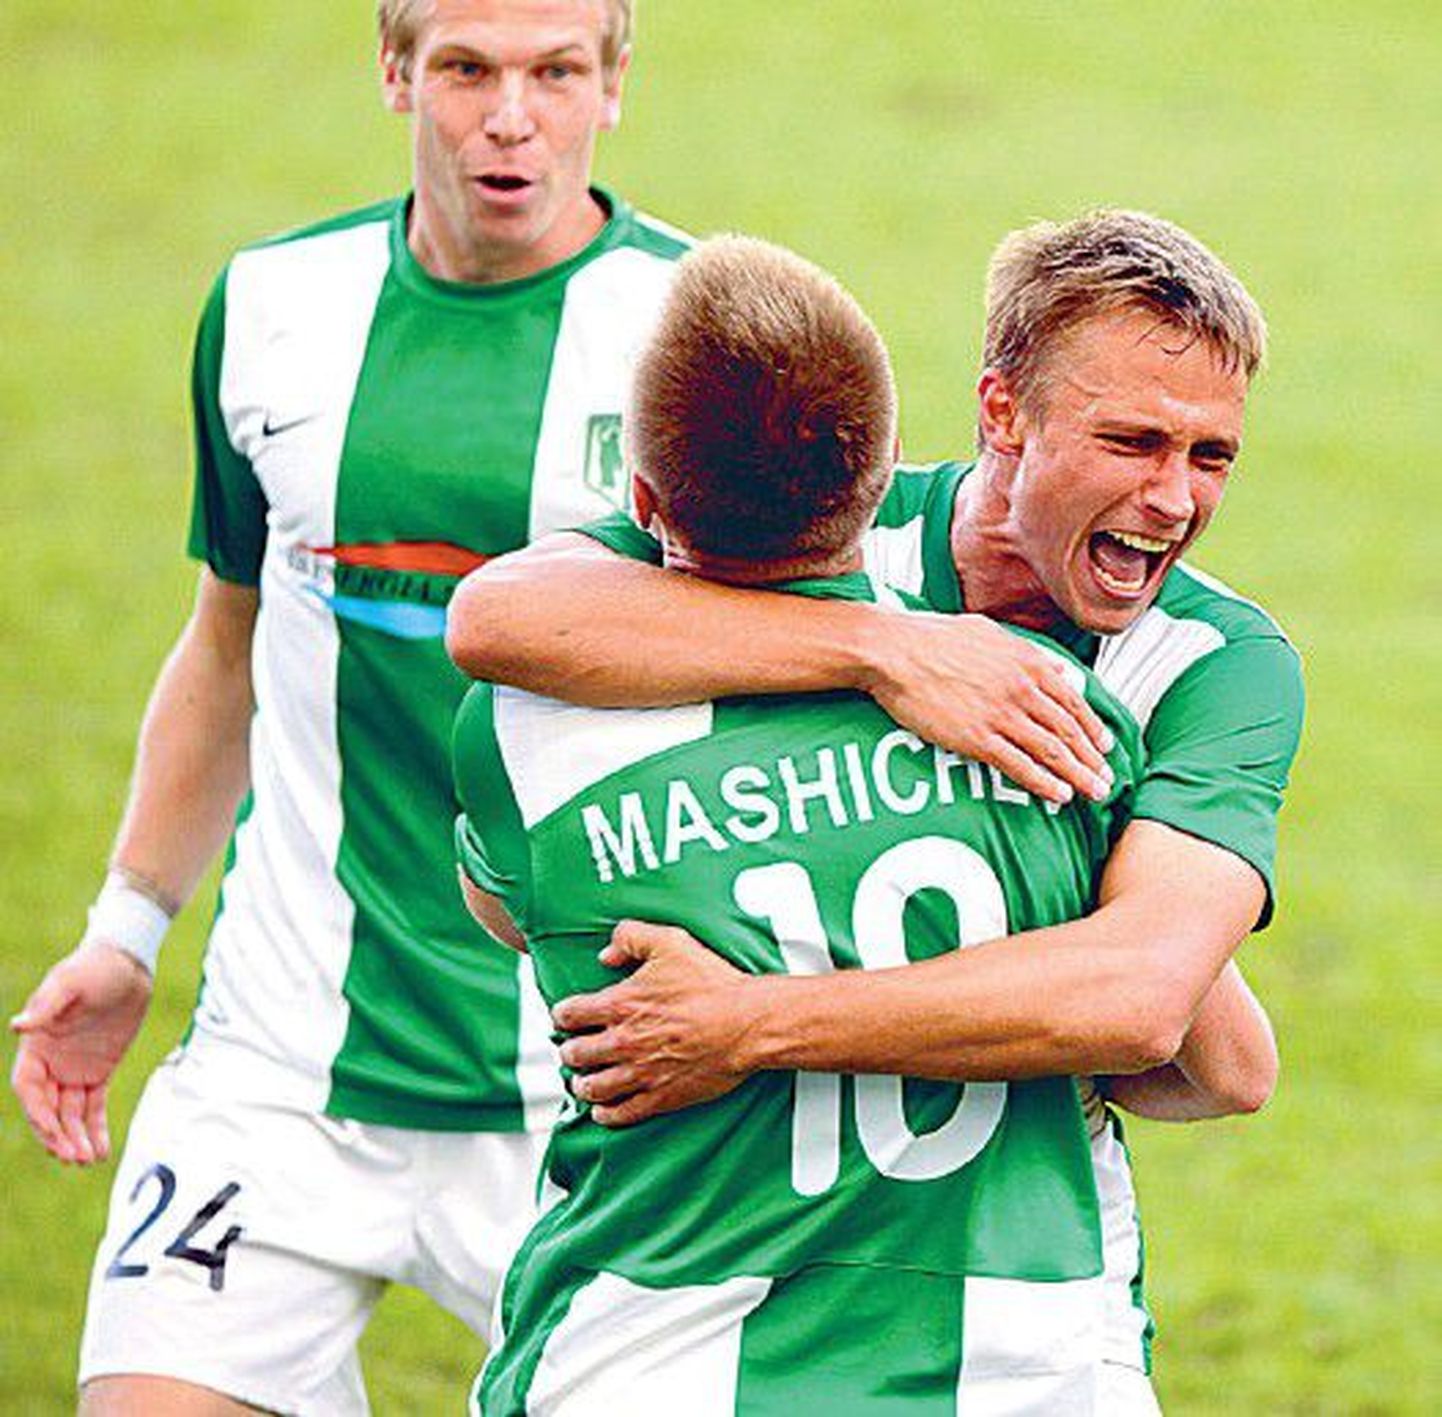 Футболисты FC Flora Герт Камс (справа) и Карл Палату(слева) поздравляют Николая Машичева, на счету которого немало голов, забитых в последнее время. В субботнем матче он также забил гол в ворота давнего соперника — команды Levadia.